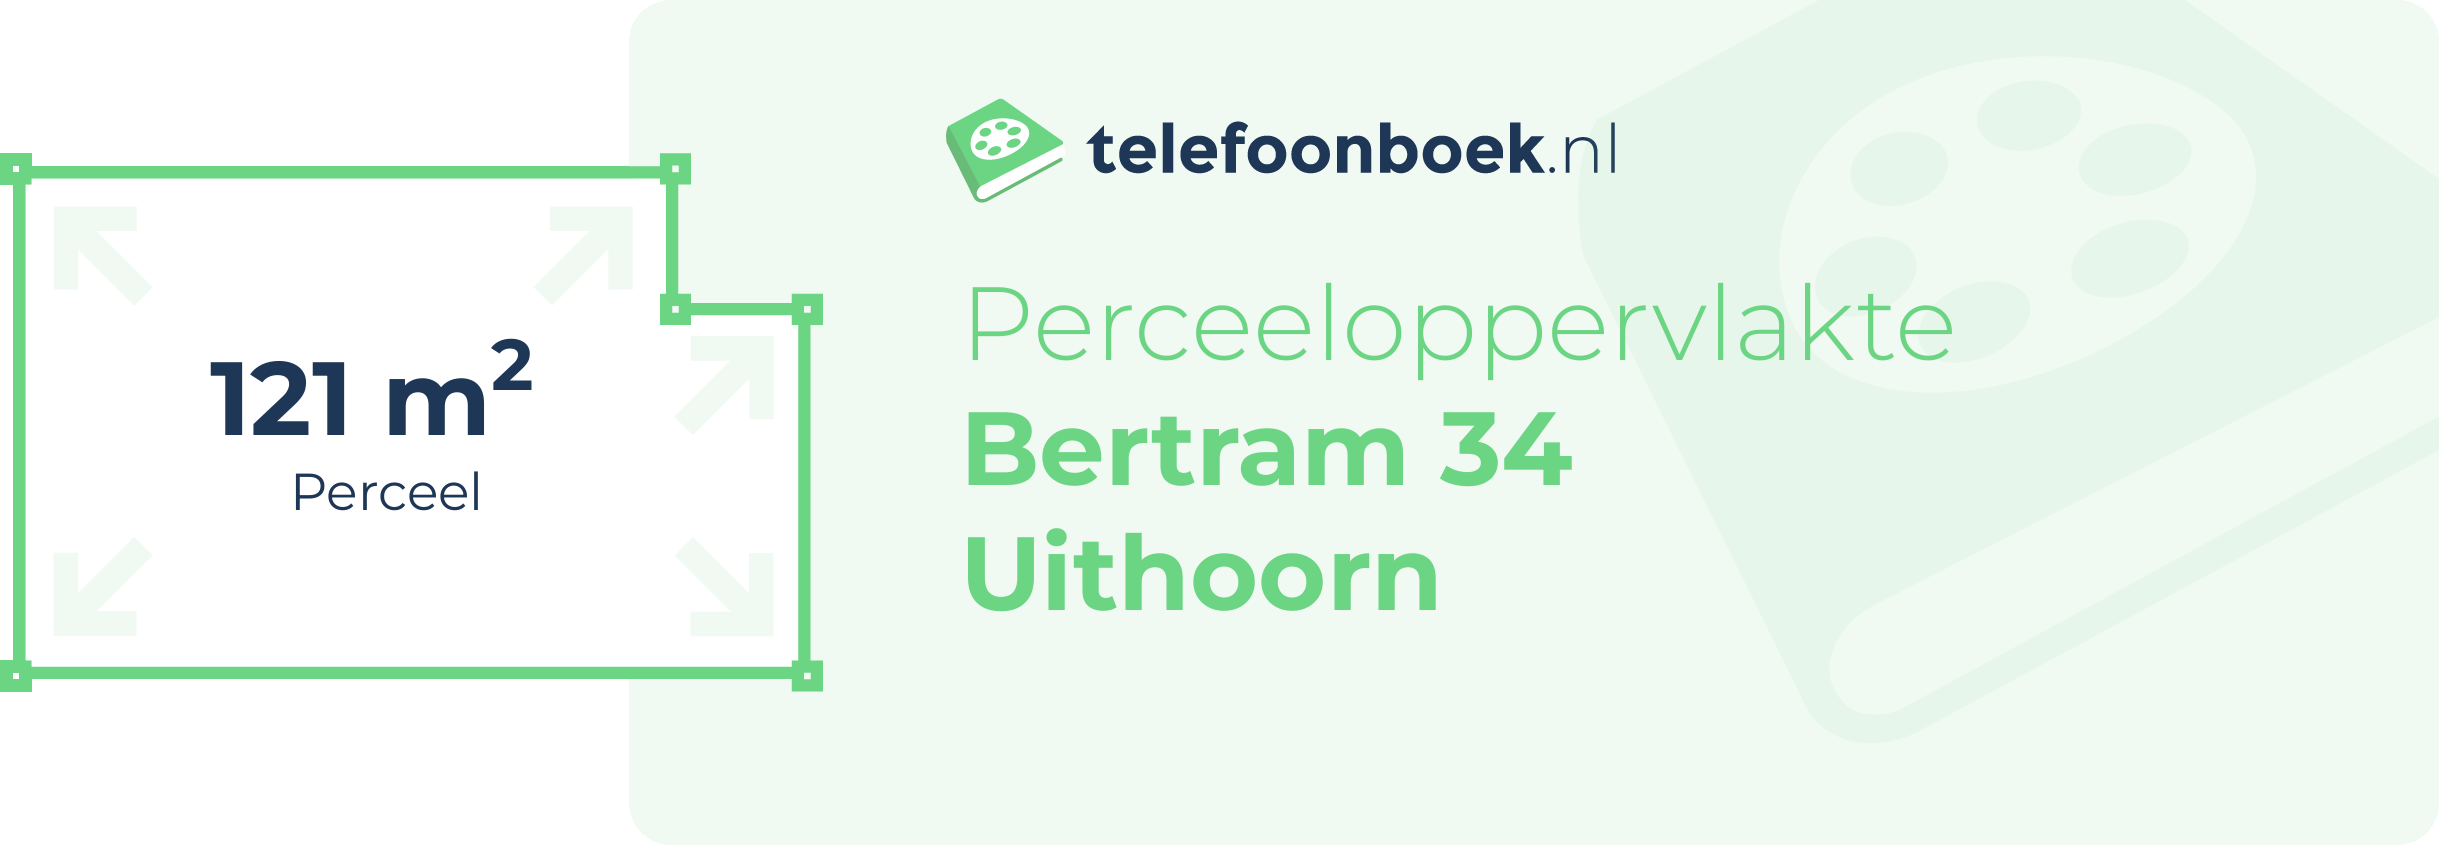 Perceeloppervlakte Bertram 34 Uithoorn